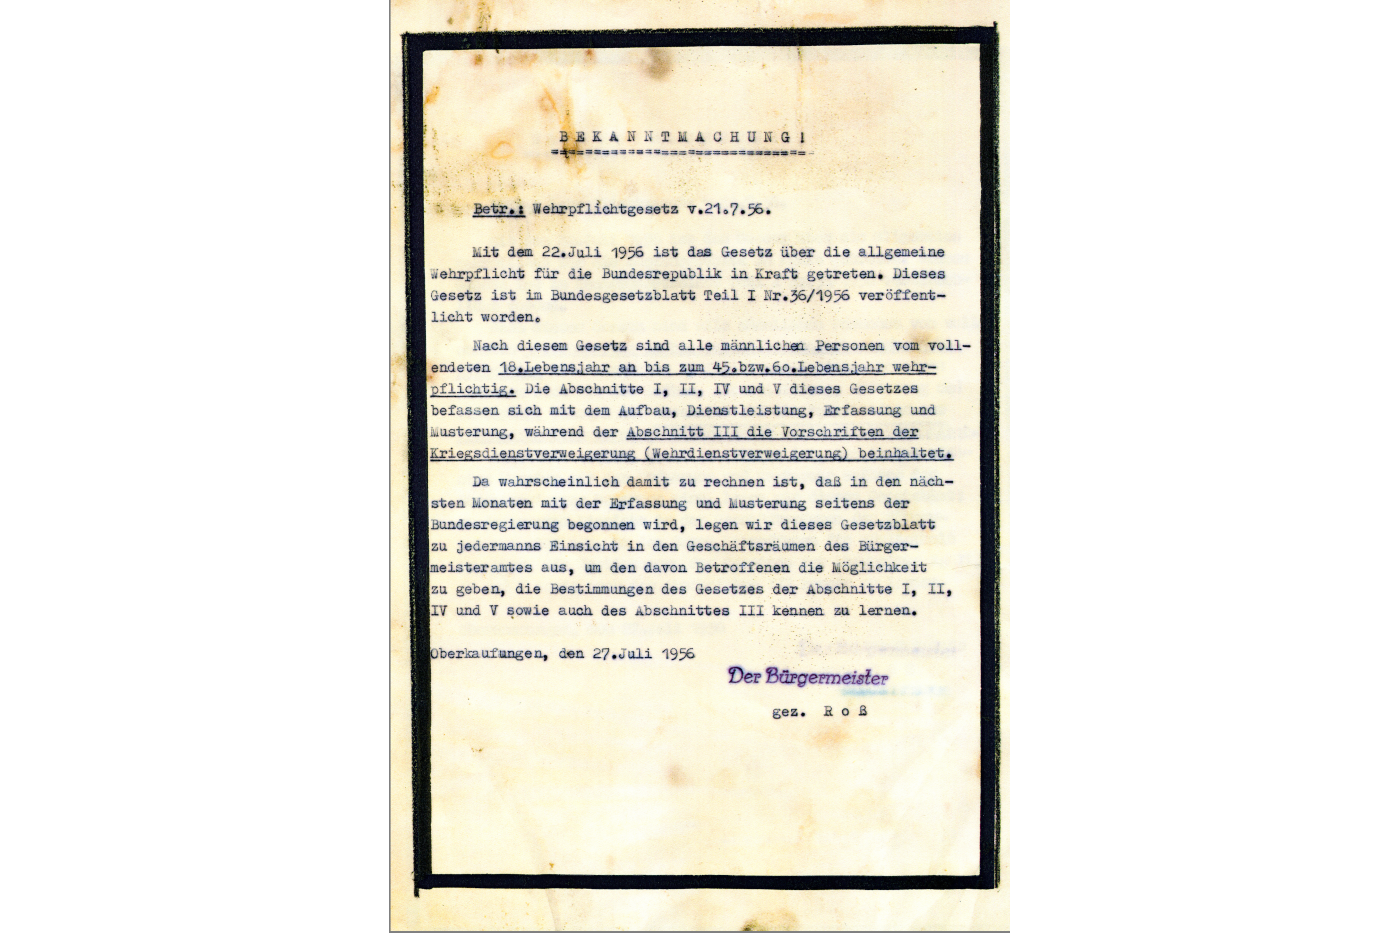 Bekanntmachung zum Wehrpflichtgesetz vom 21.7.1956